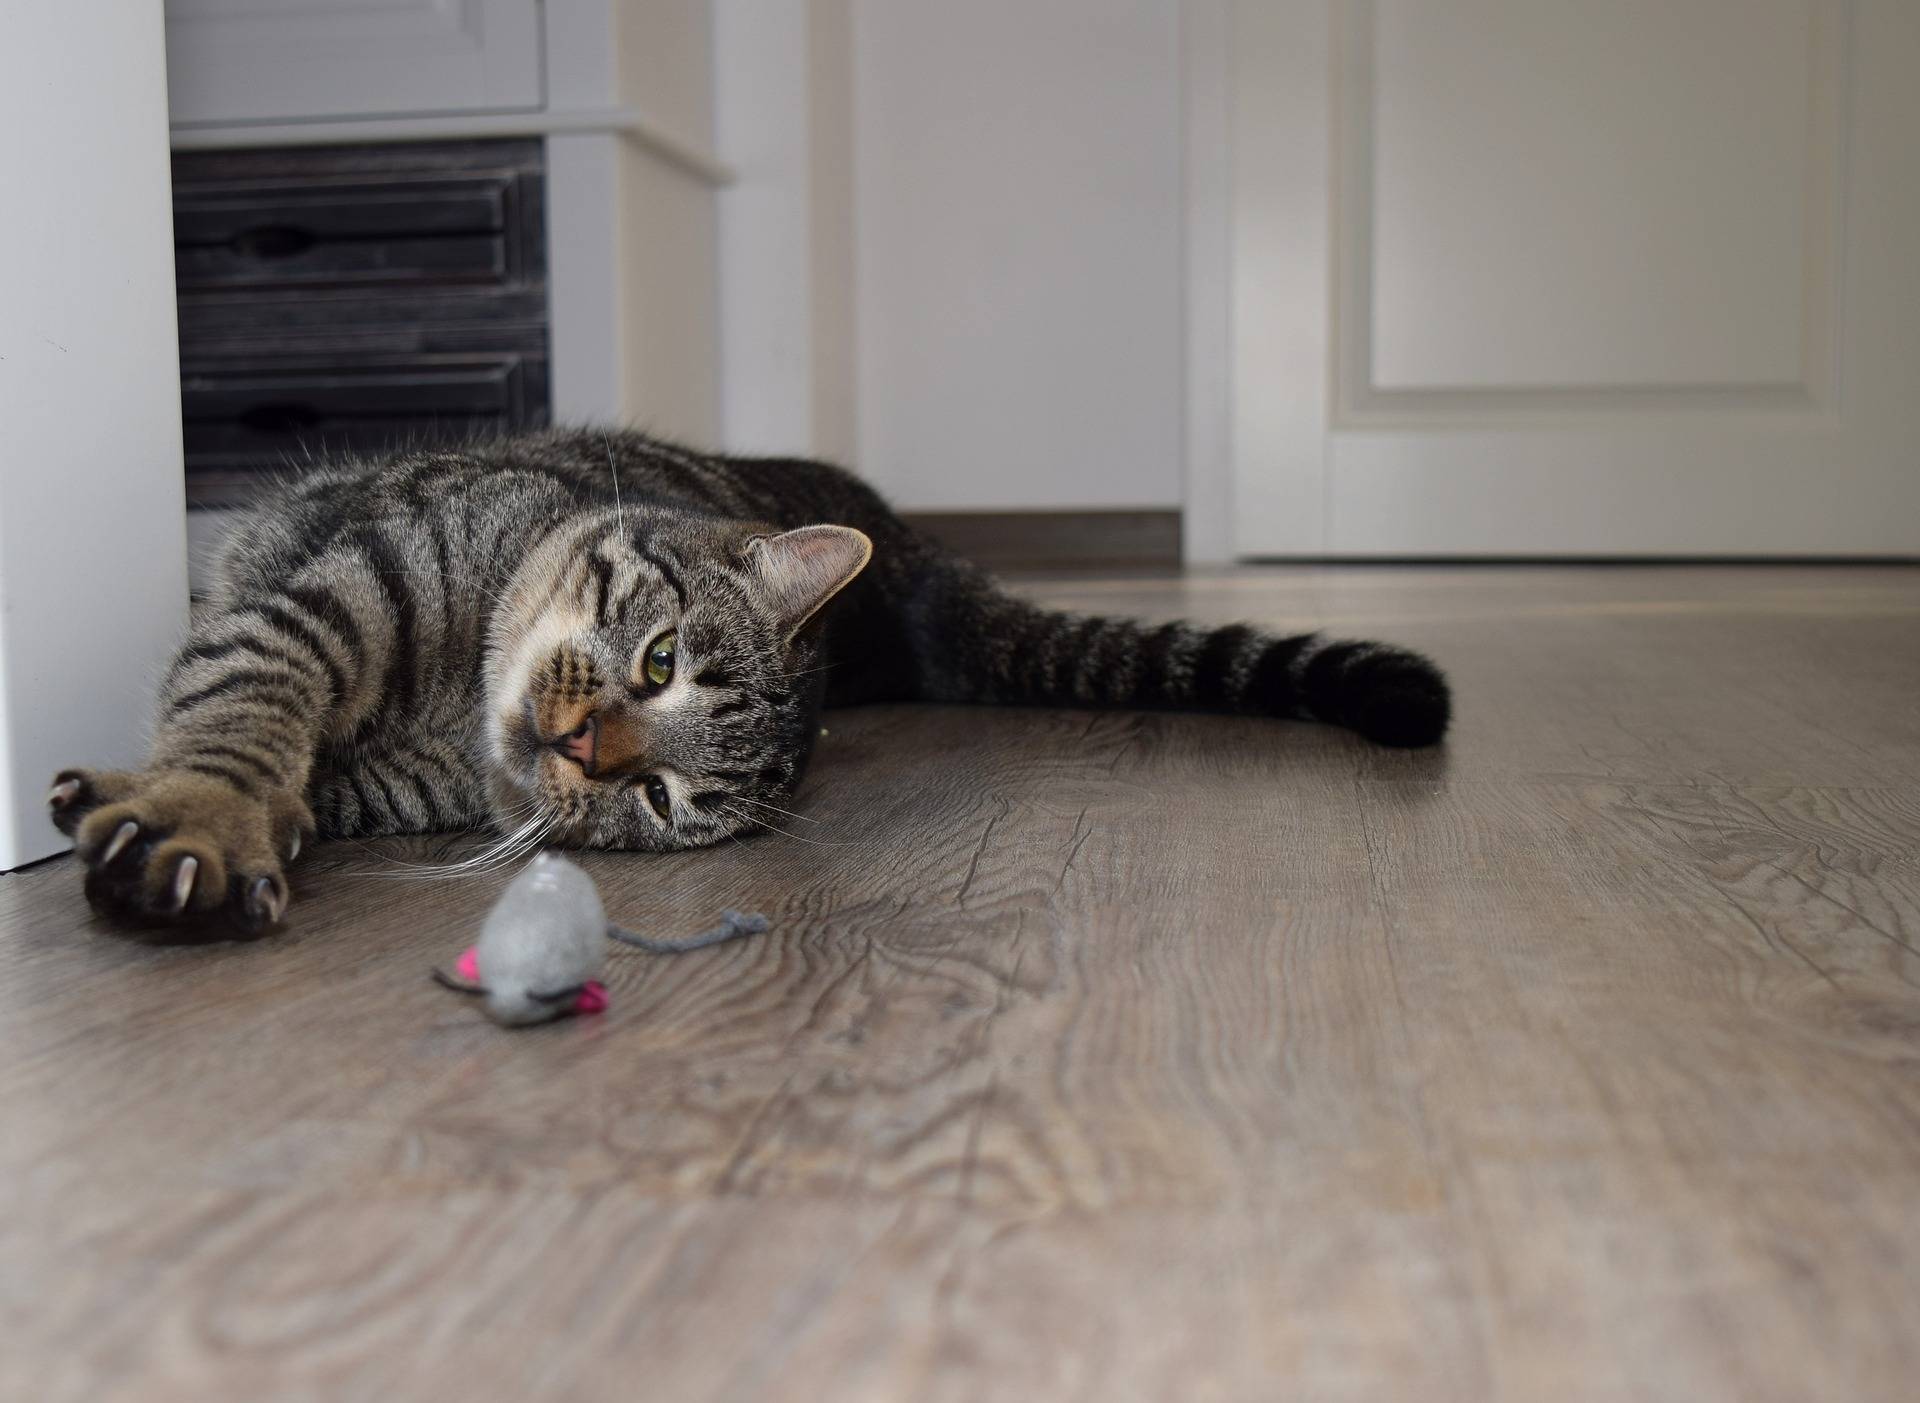 Как отучить кота или кошку драть обои и мебель — работающие способы